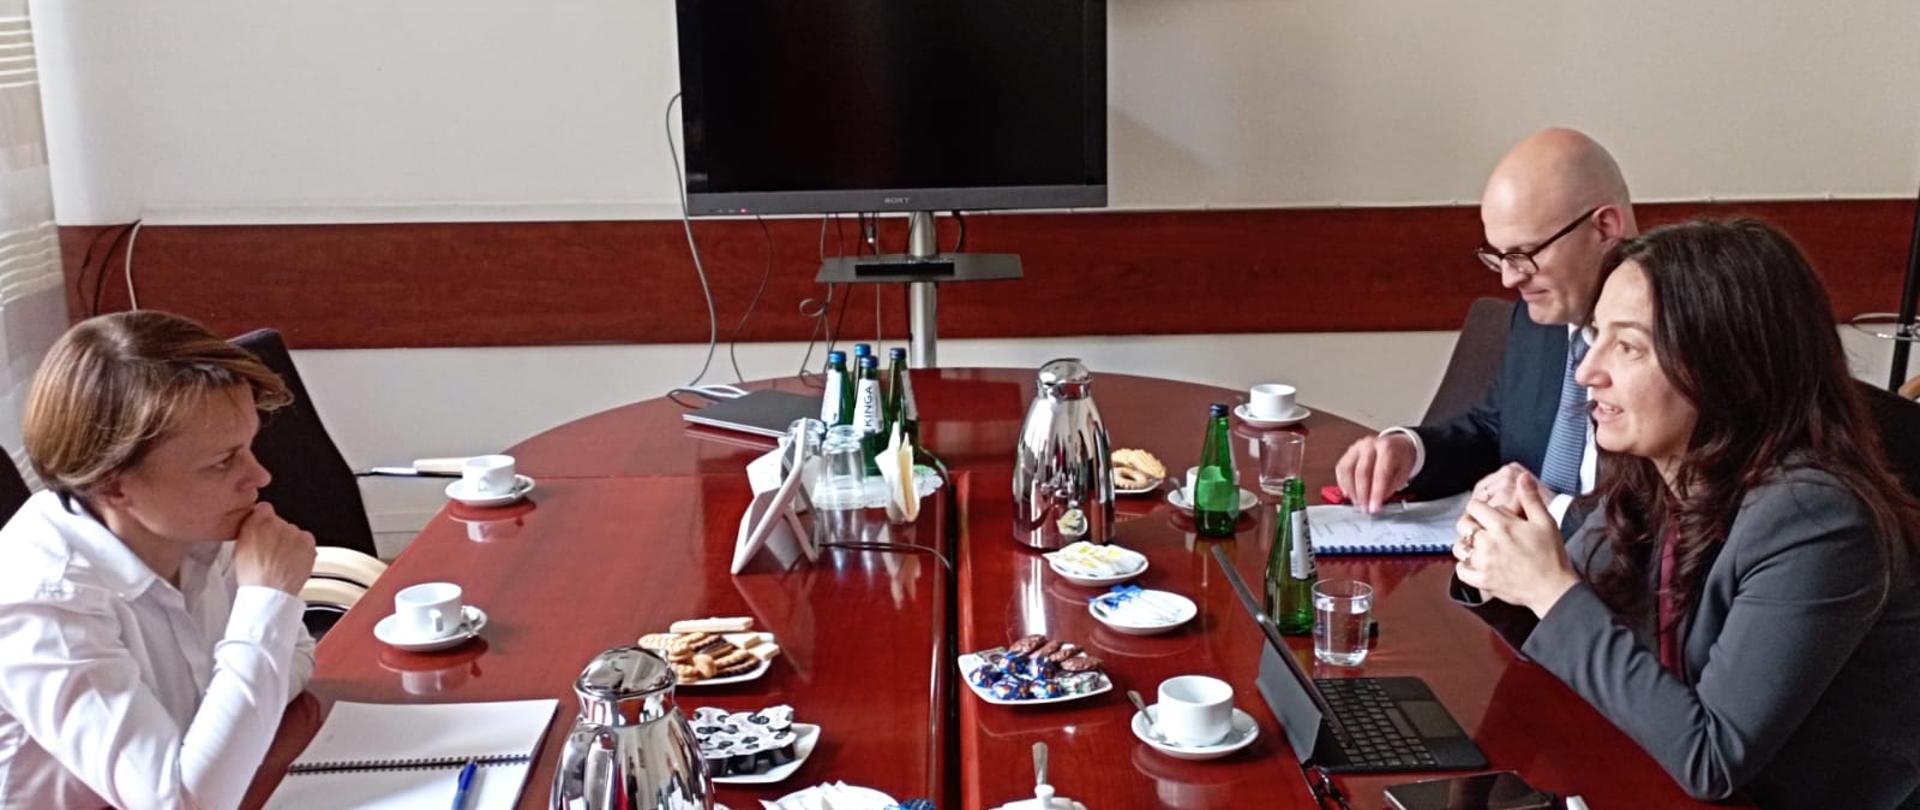 Trzy osoby siedzą przy stole. Z lewej strony w białej koszuli siedzi wiceminister Jadwiga Emilewicz.